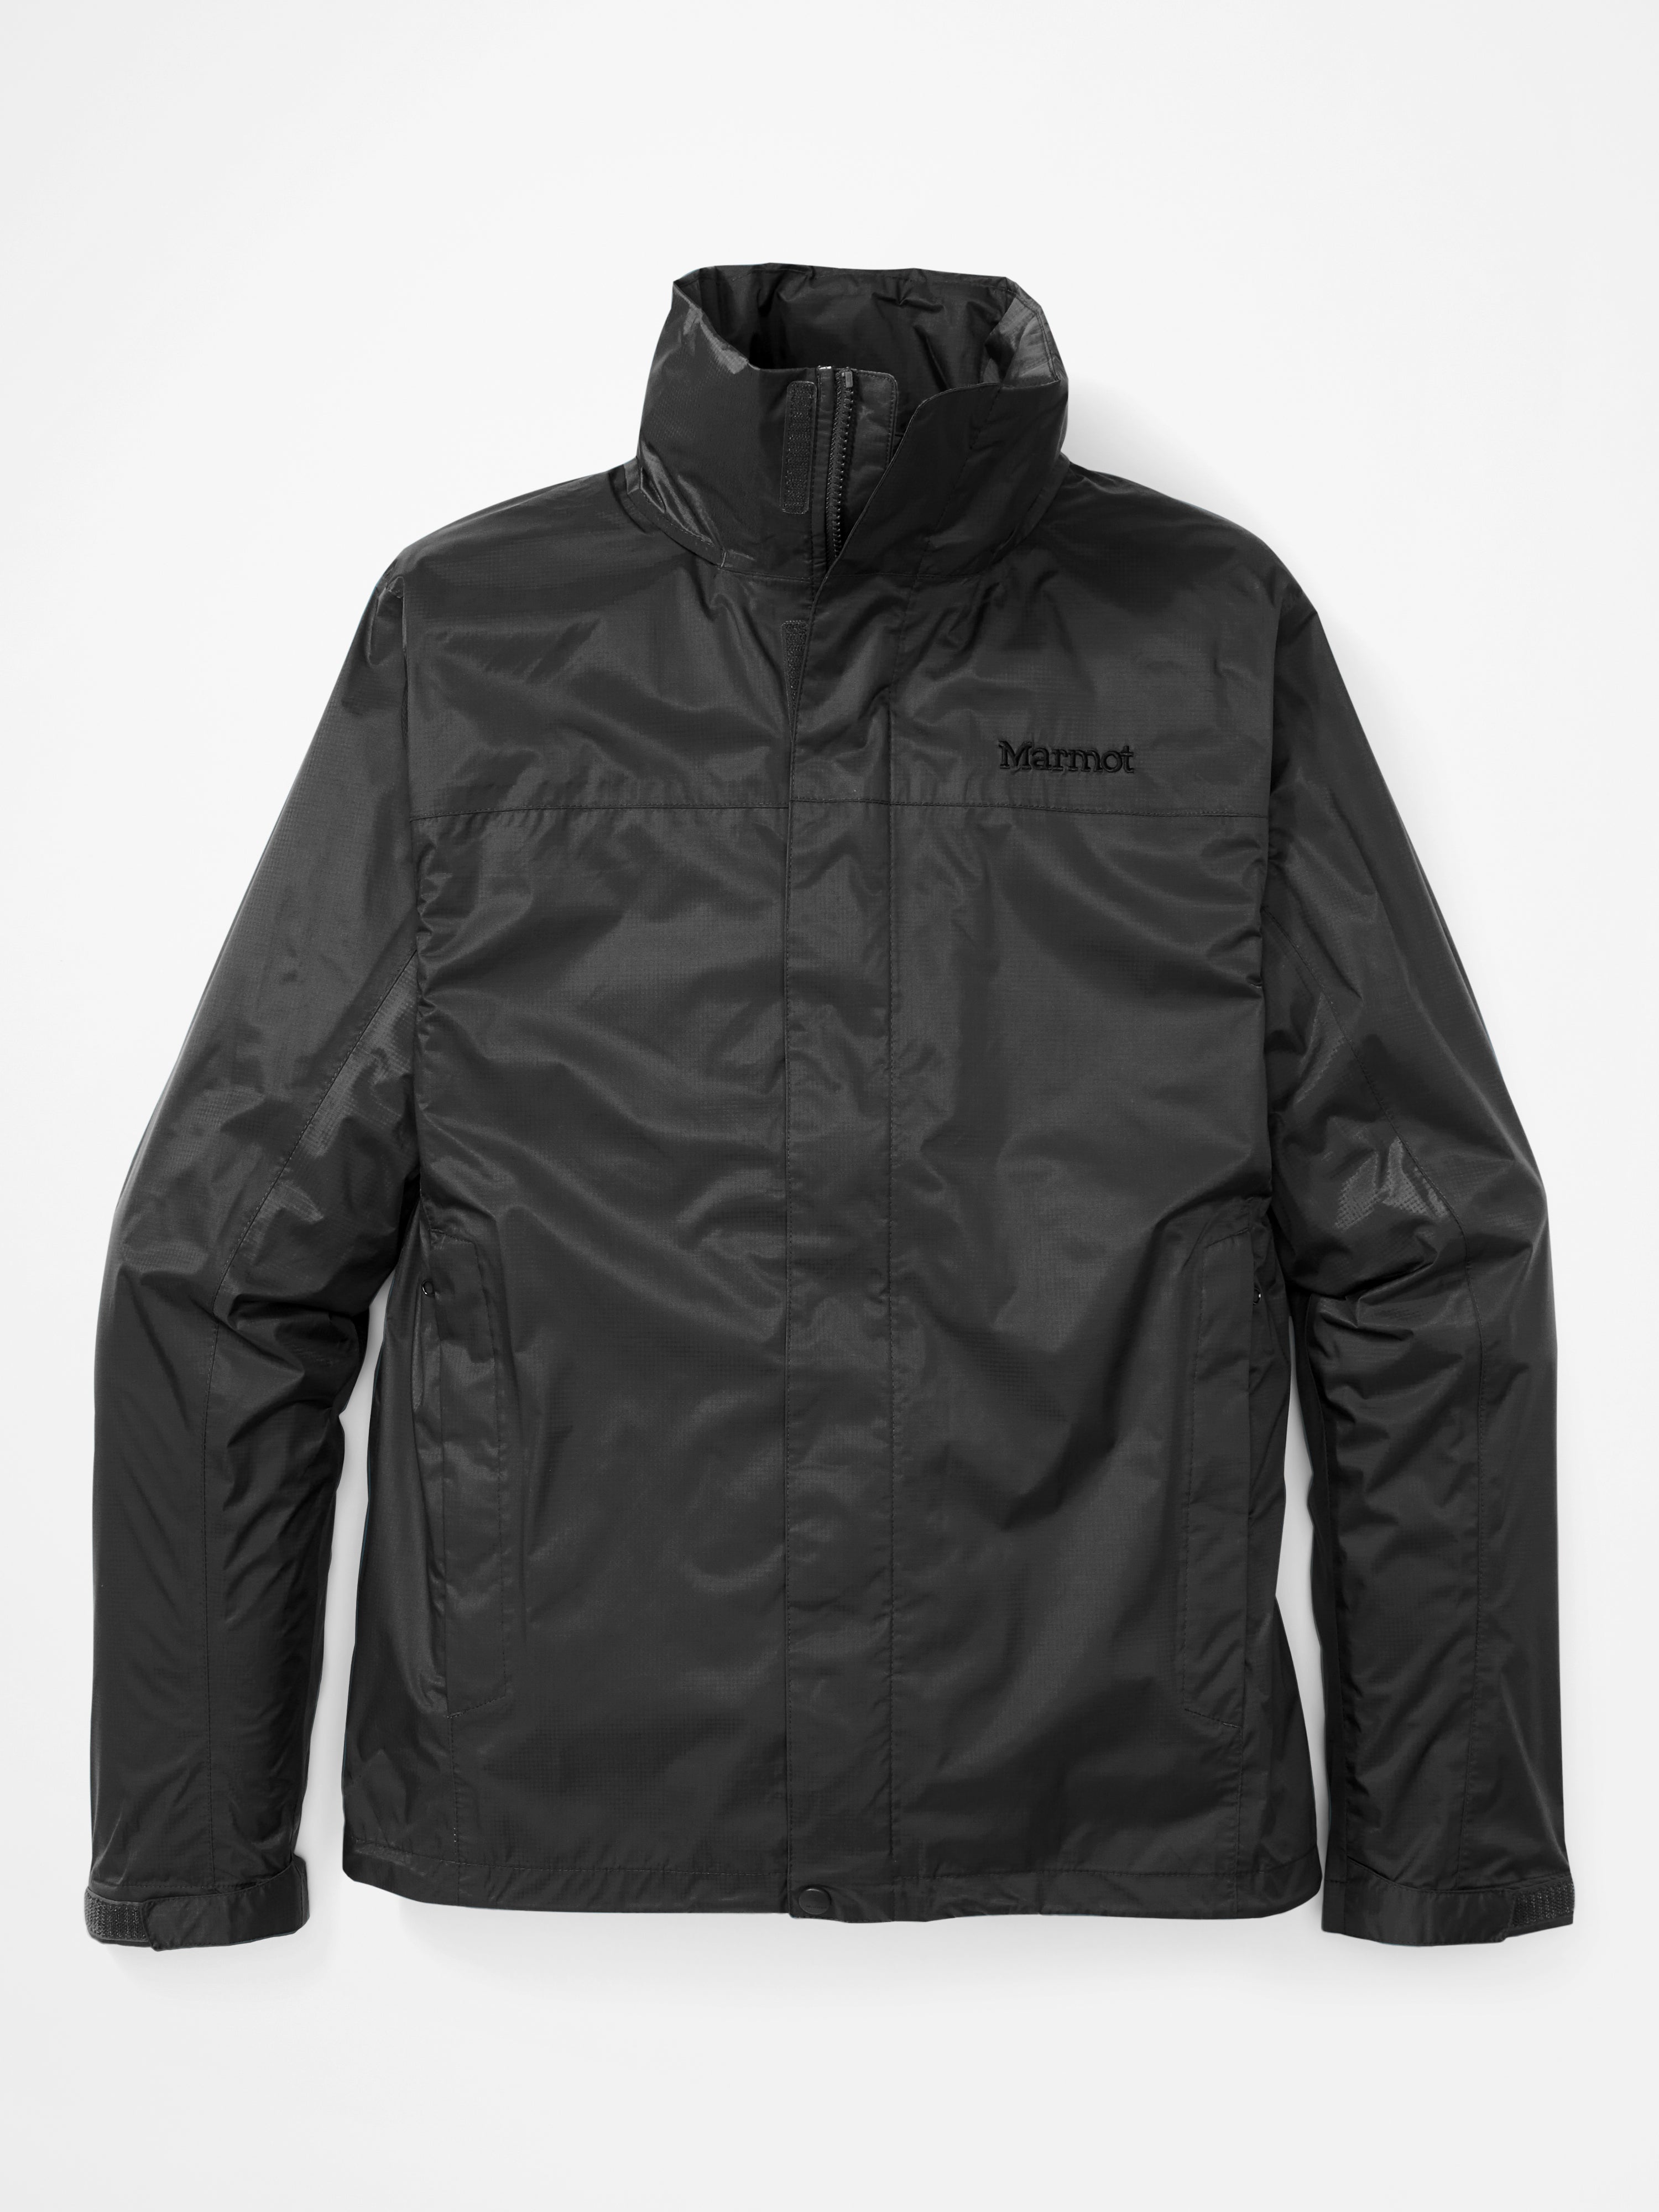 'Marmot' Men's PreCip Eco Jacket - Black